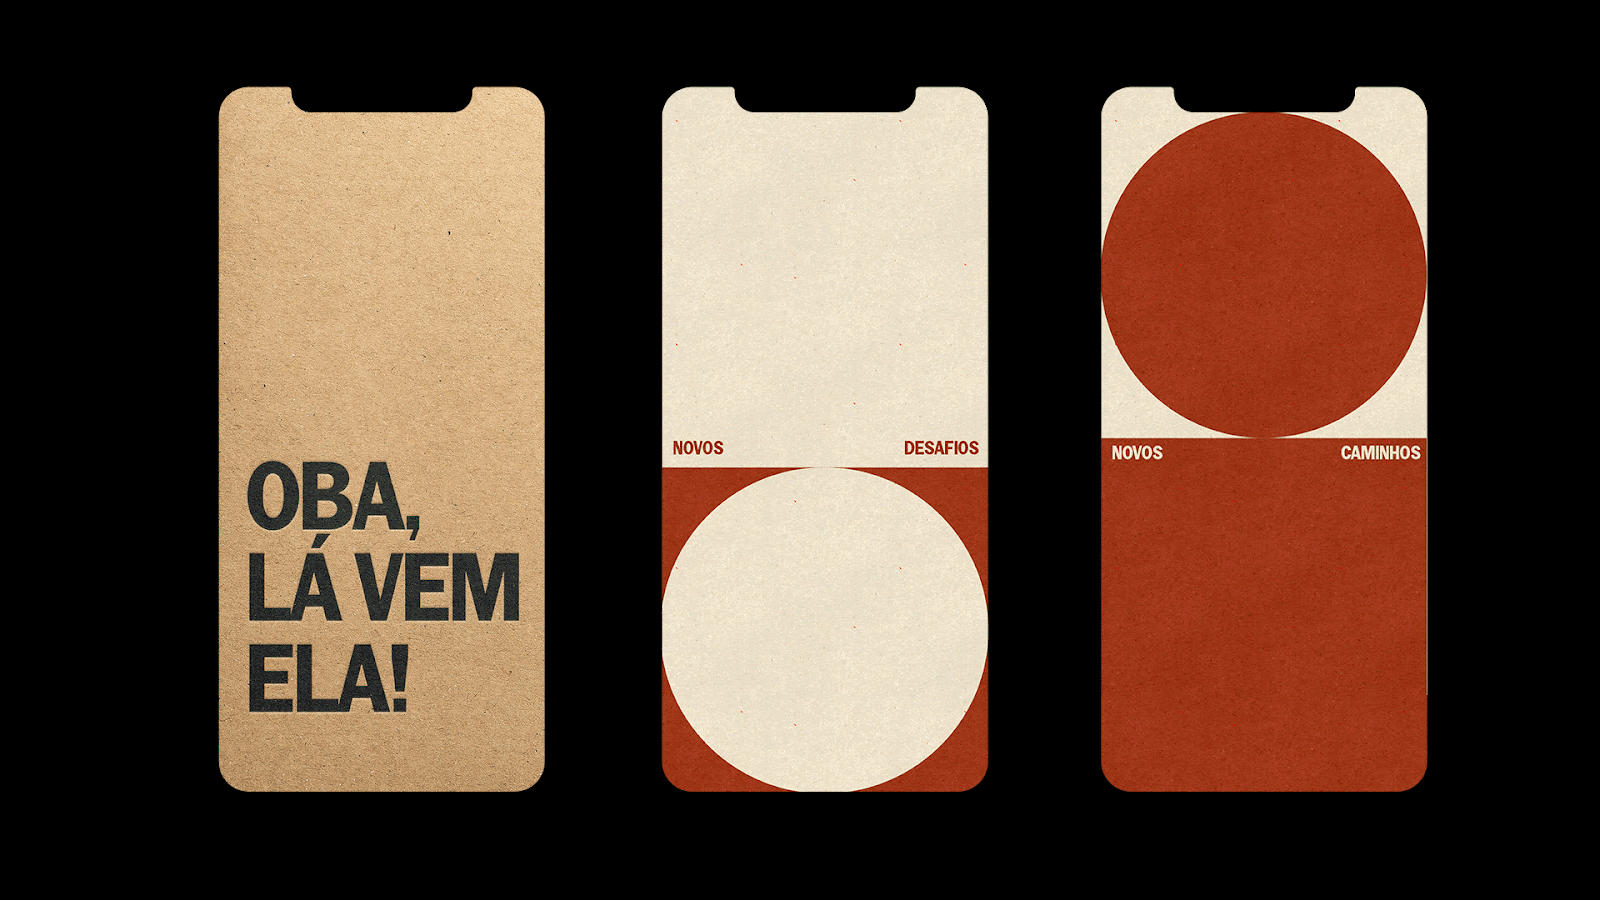 Monga's branding, visual identity and logo design for Badara: A cara do Brasil 